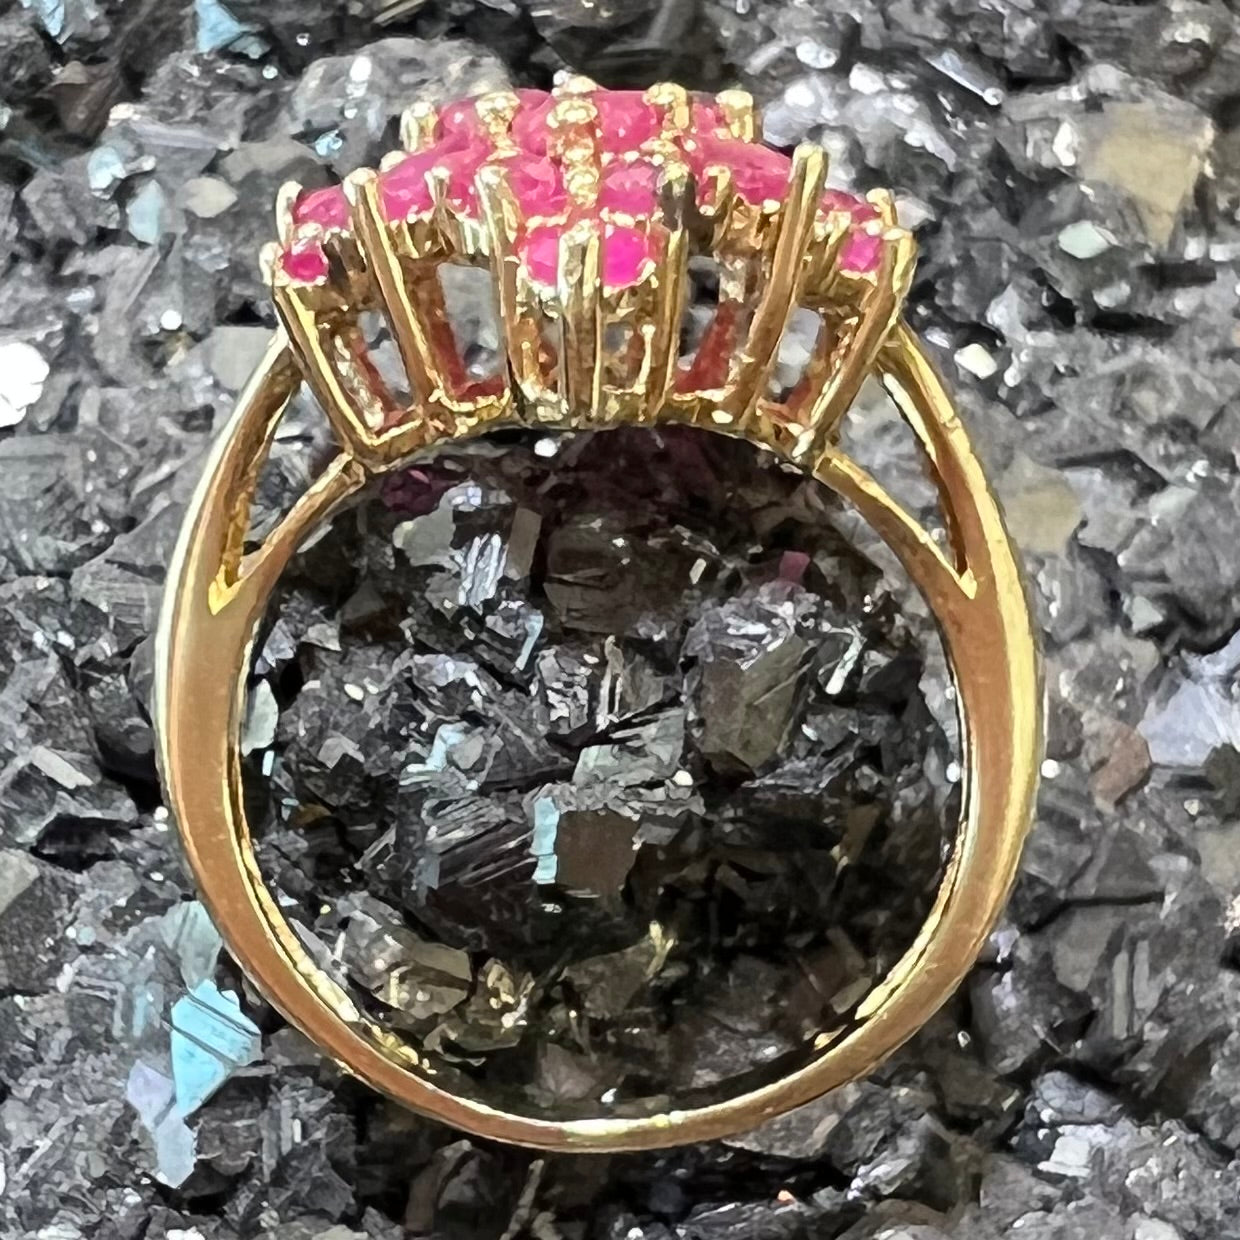 Burma ruby cluster ring set in 14 karat yellow gold.